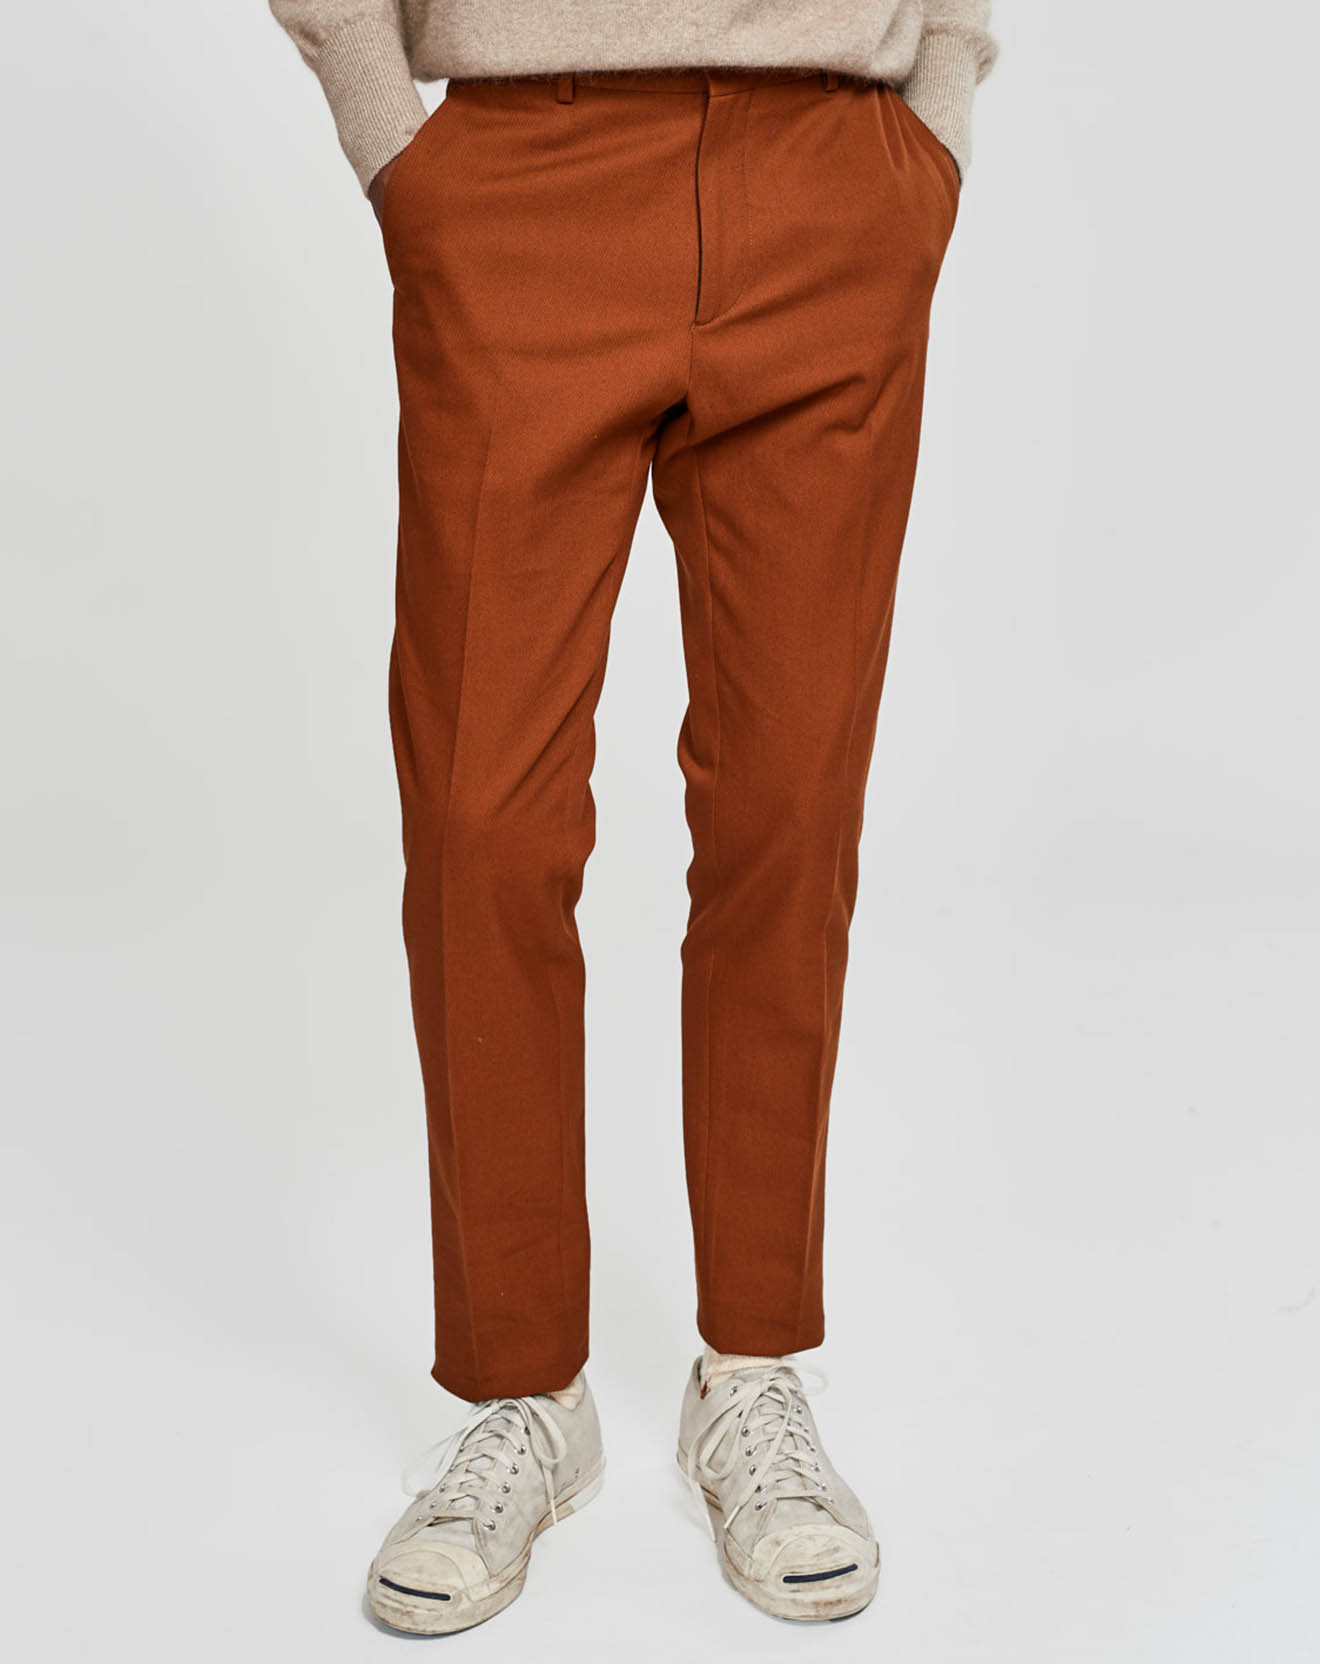 Pantalon Frush orange cendré